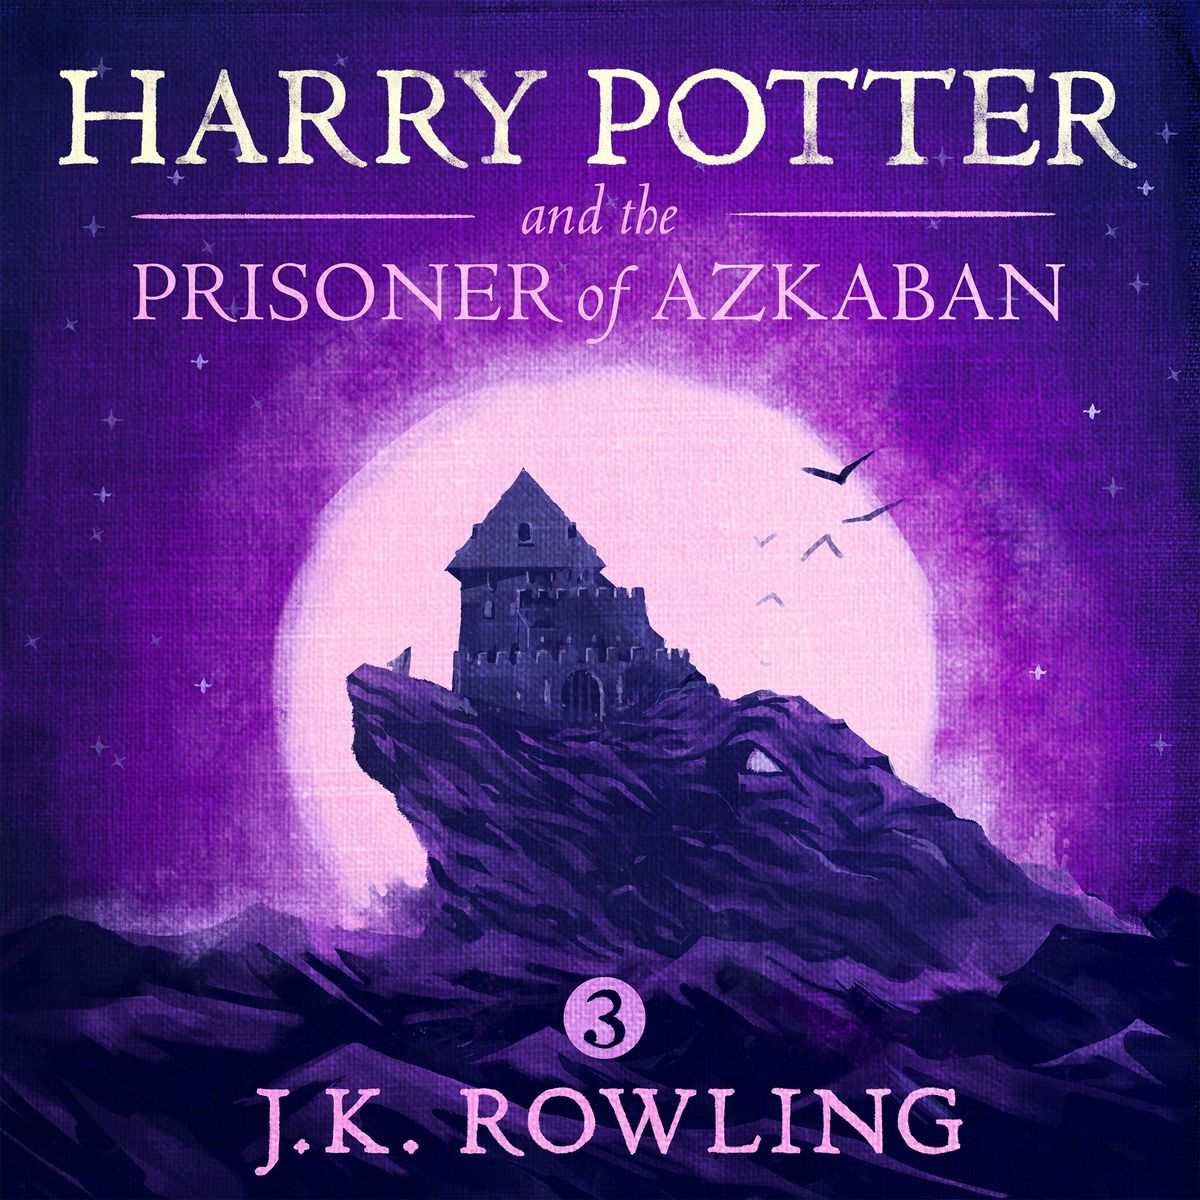 book review on harry potter prisoner of azkaban